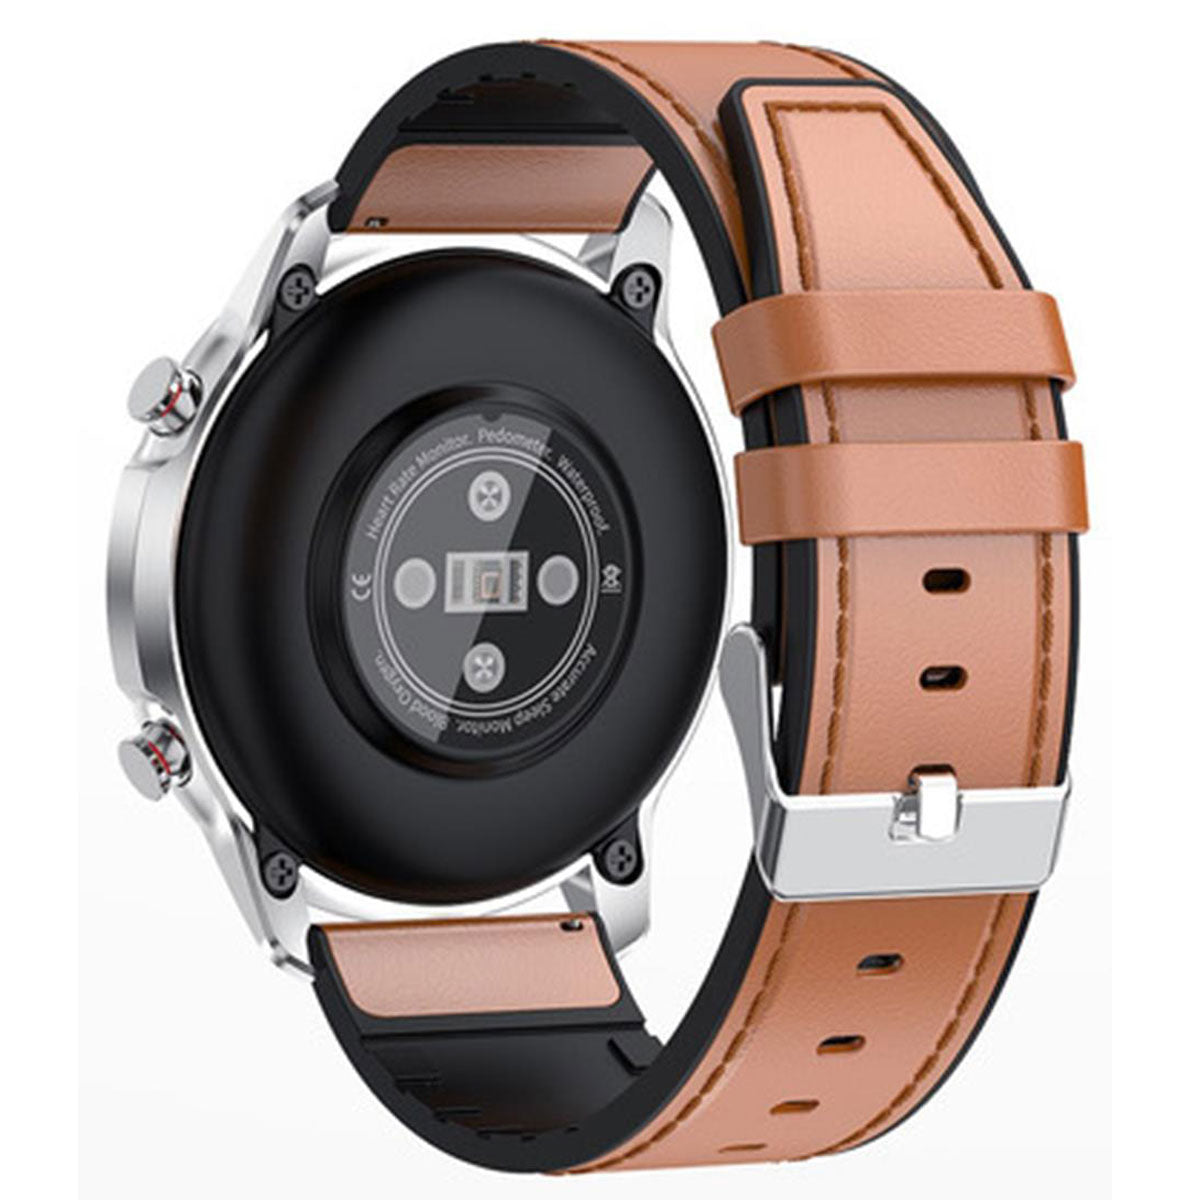 Reloj Inteligente Smart watch Fralugio Lf26 Piel Notificaciones de Redes Sociales